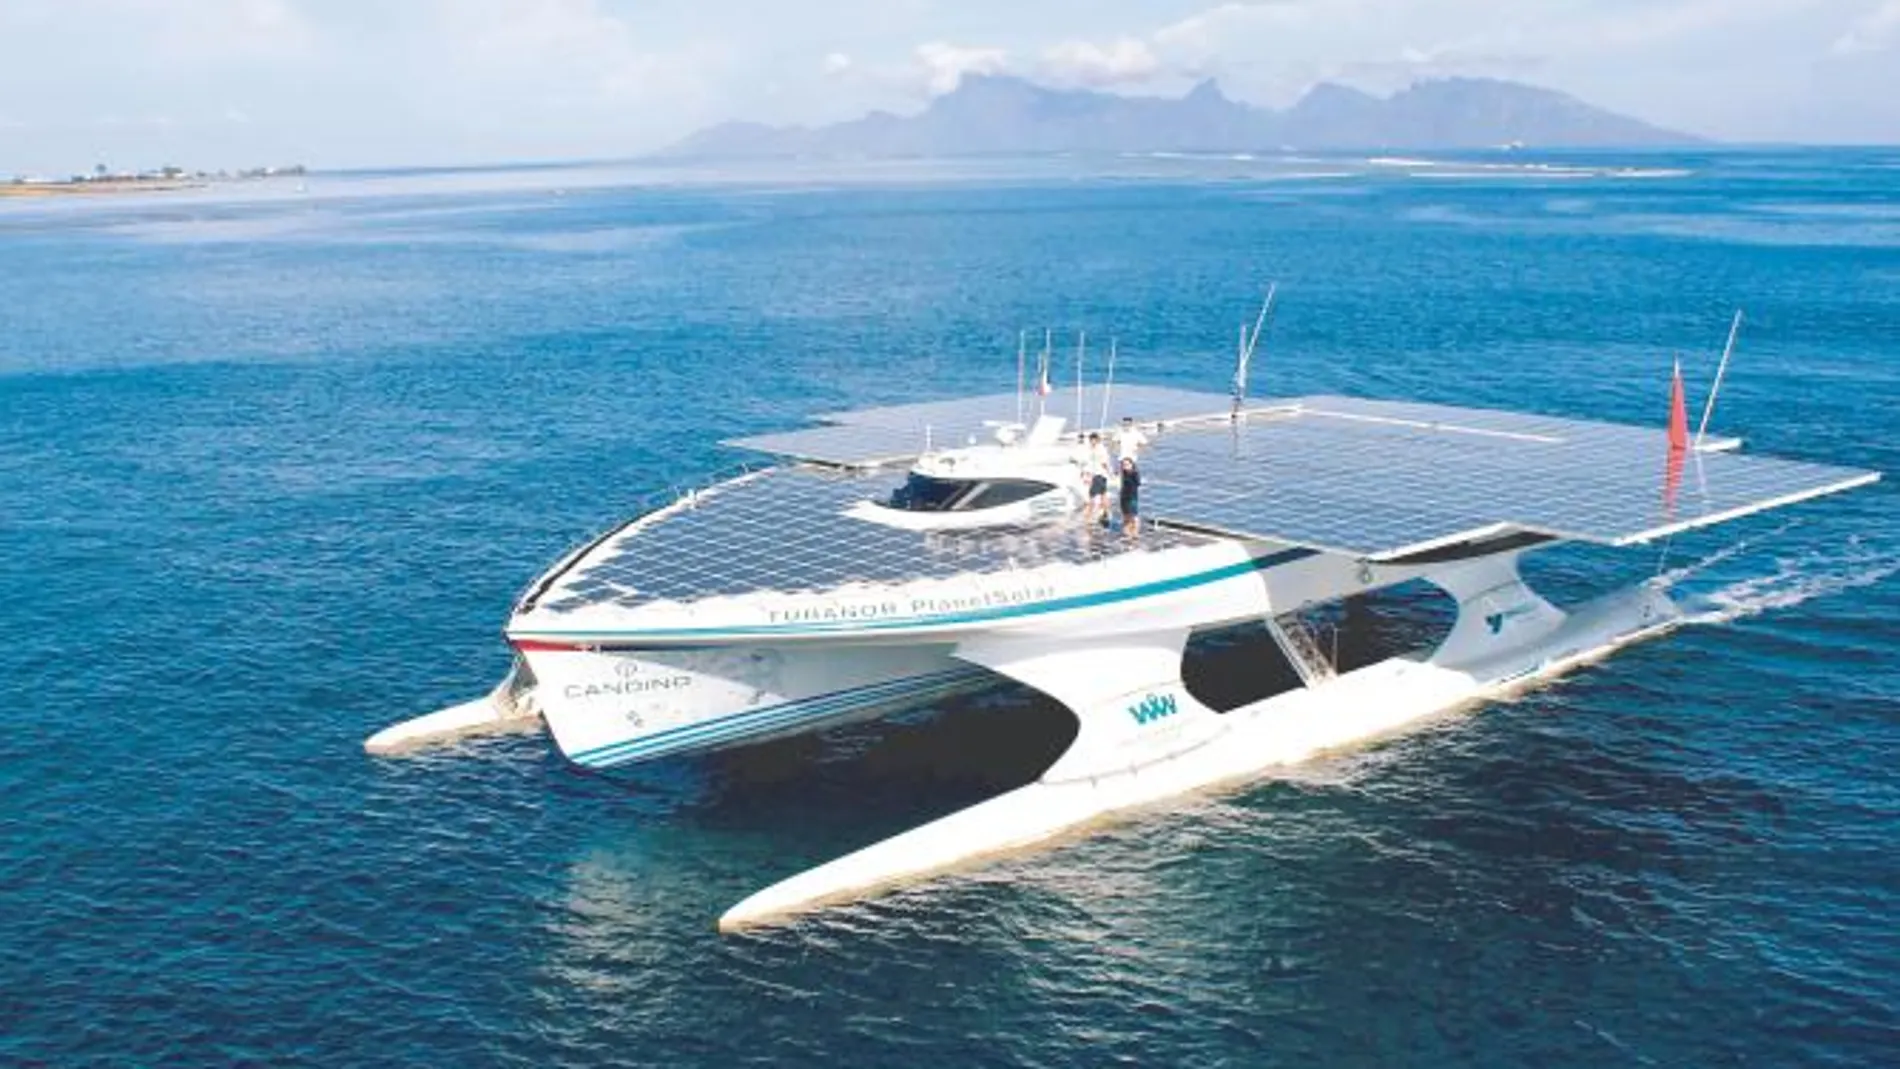 Barco solar: El catamarán fotovoltaico más grande del mundo inicia la última etapa de la vuelta al globo